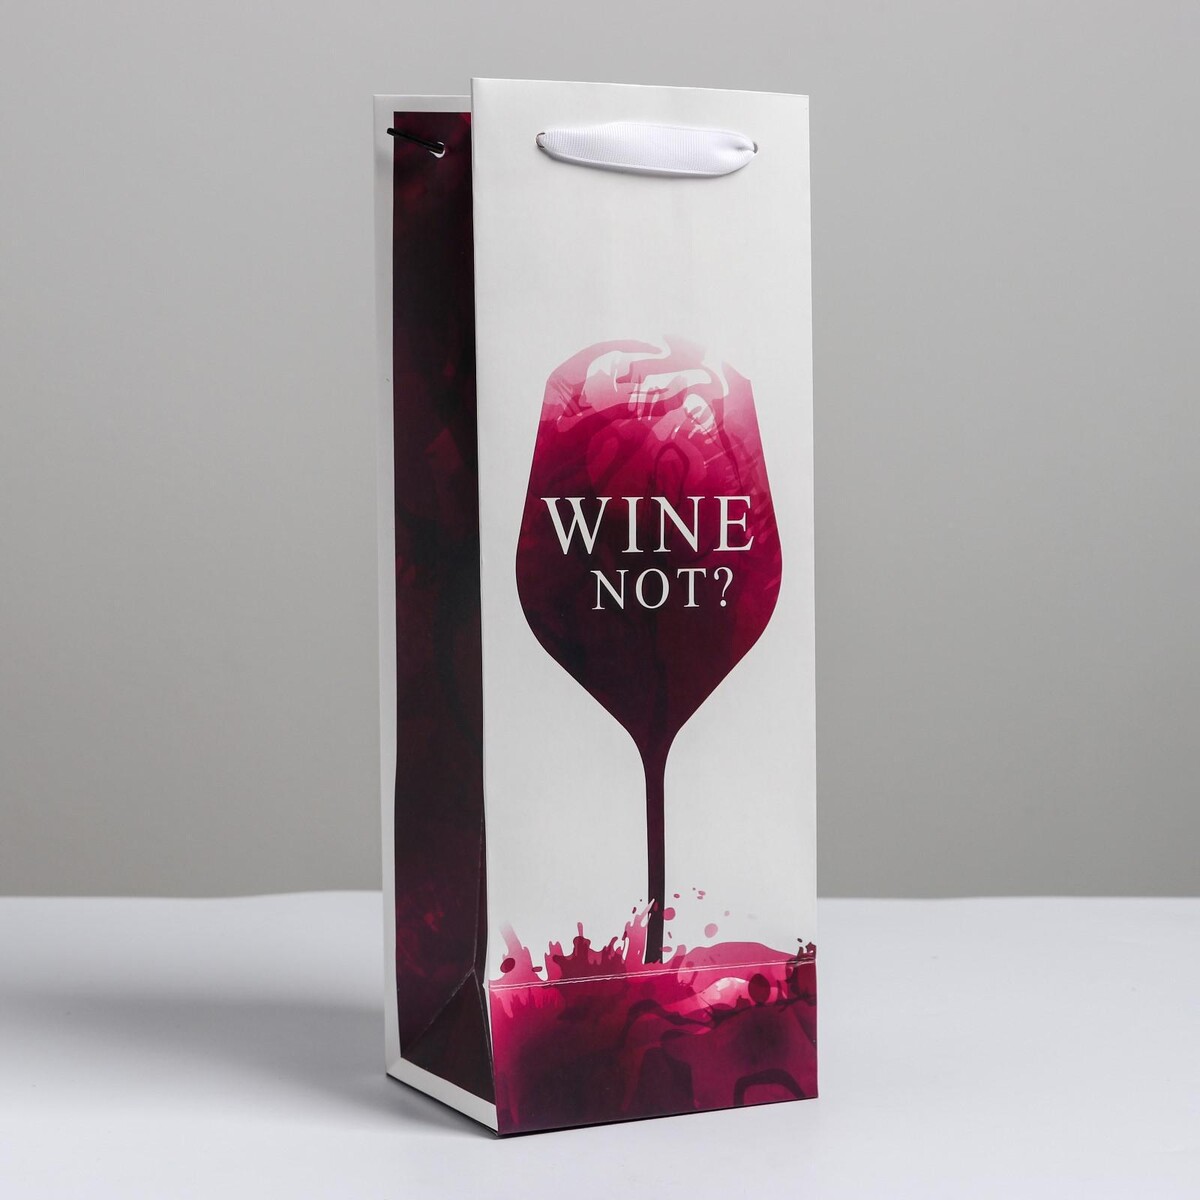 Пакет подарочный ламинированный под бутылку, упаковка, wine not, 13 x 35 x 10 см бокал для вина wine 360 мл розовый